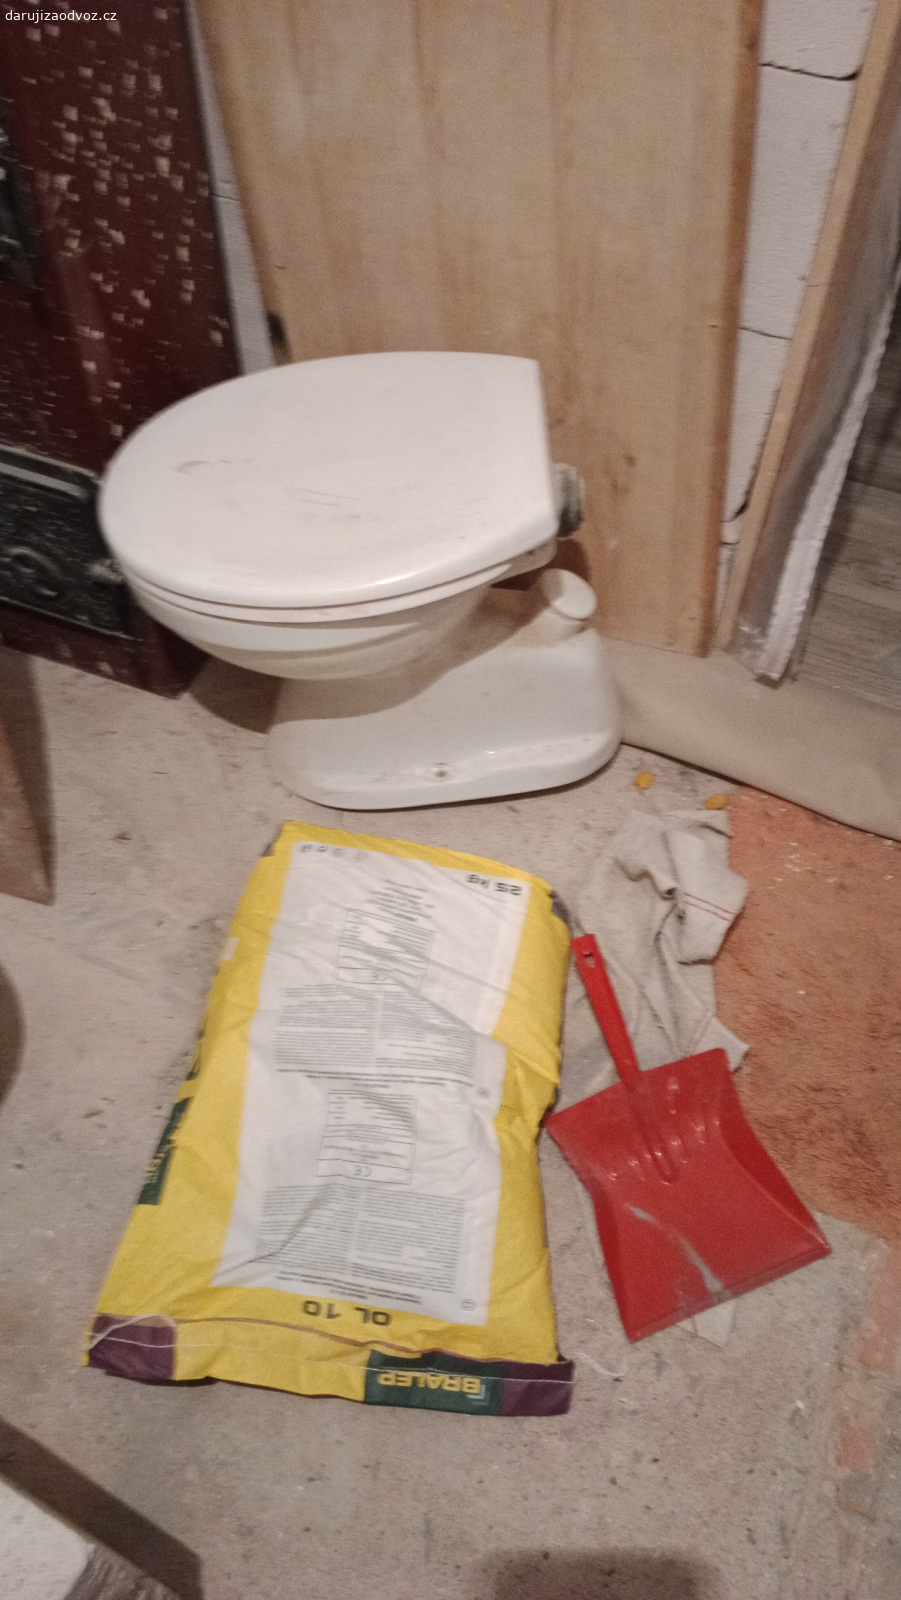 toaleta. záchod s vývodem odpadu do podlahy. možno i se splachovací nádržkou za WC závěsnou na zeď. používané ale po rekonstrukci bytu již nemá uplatnění.